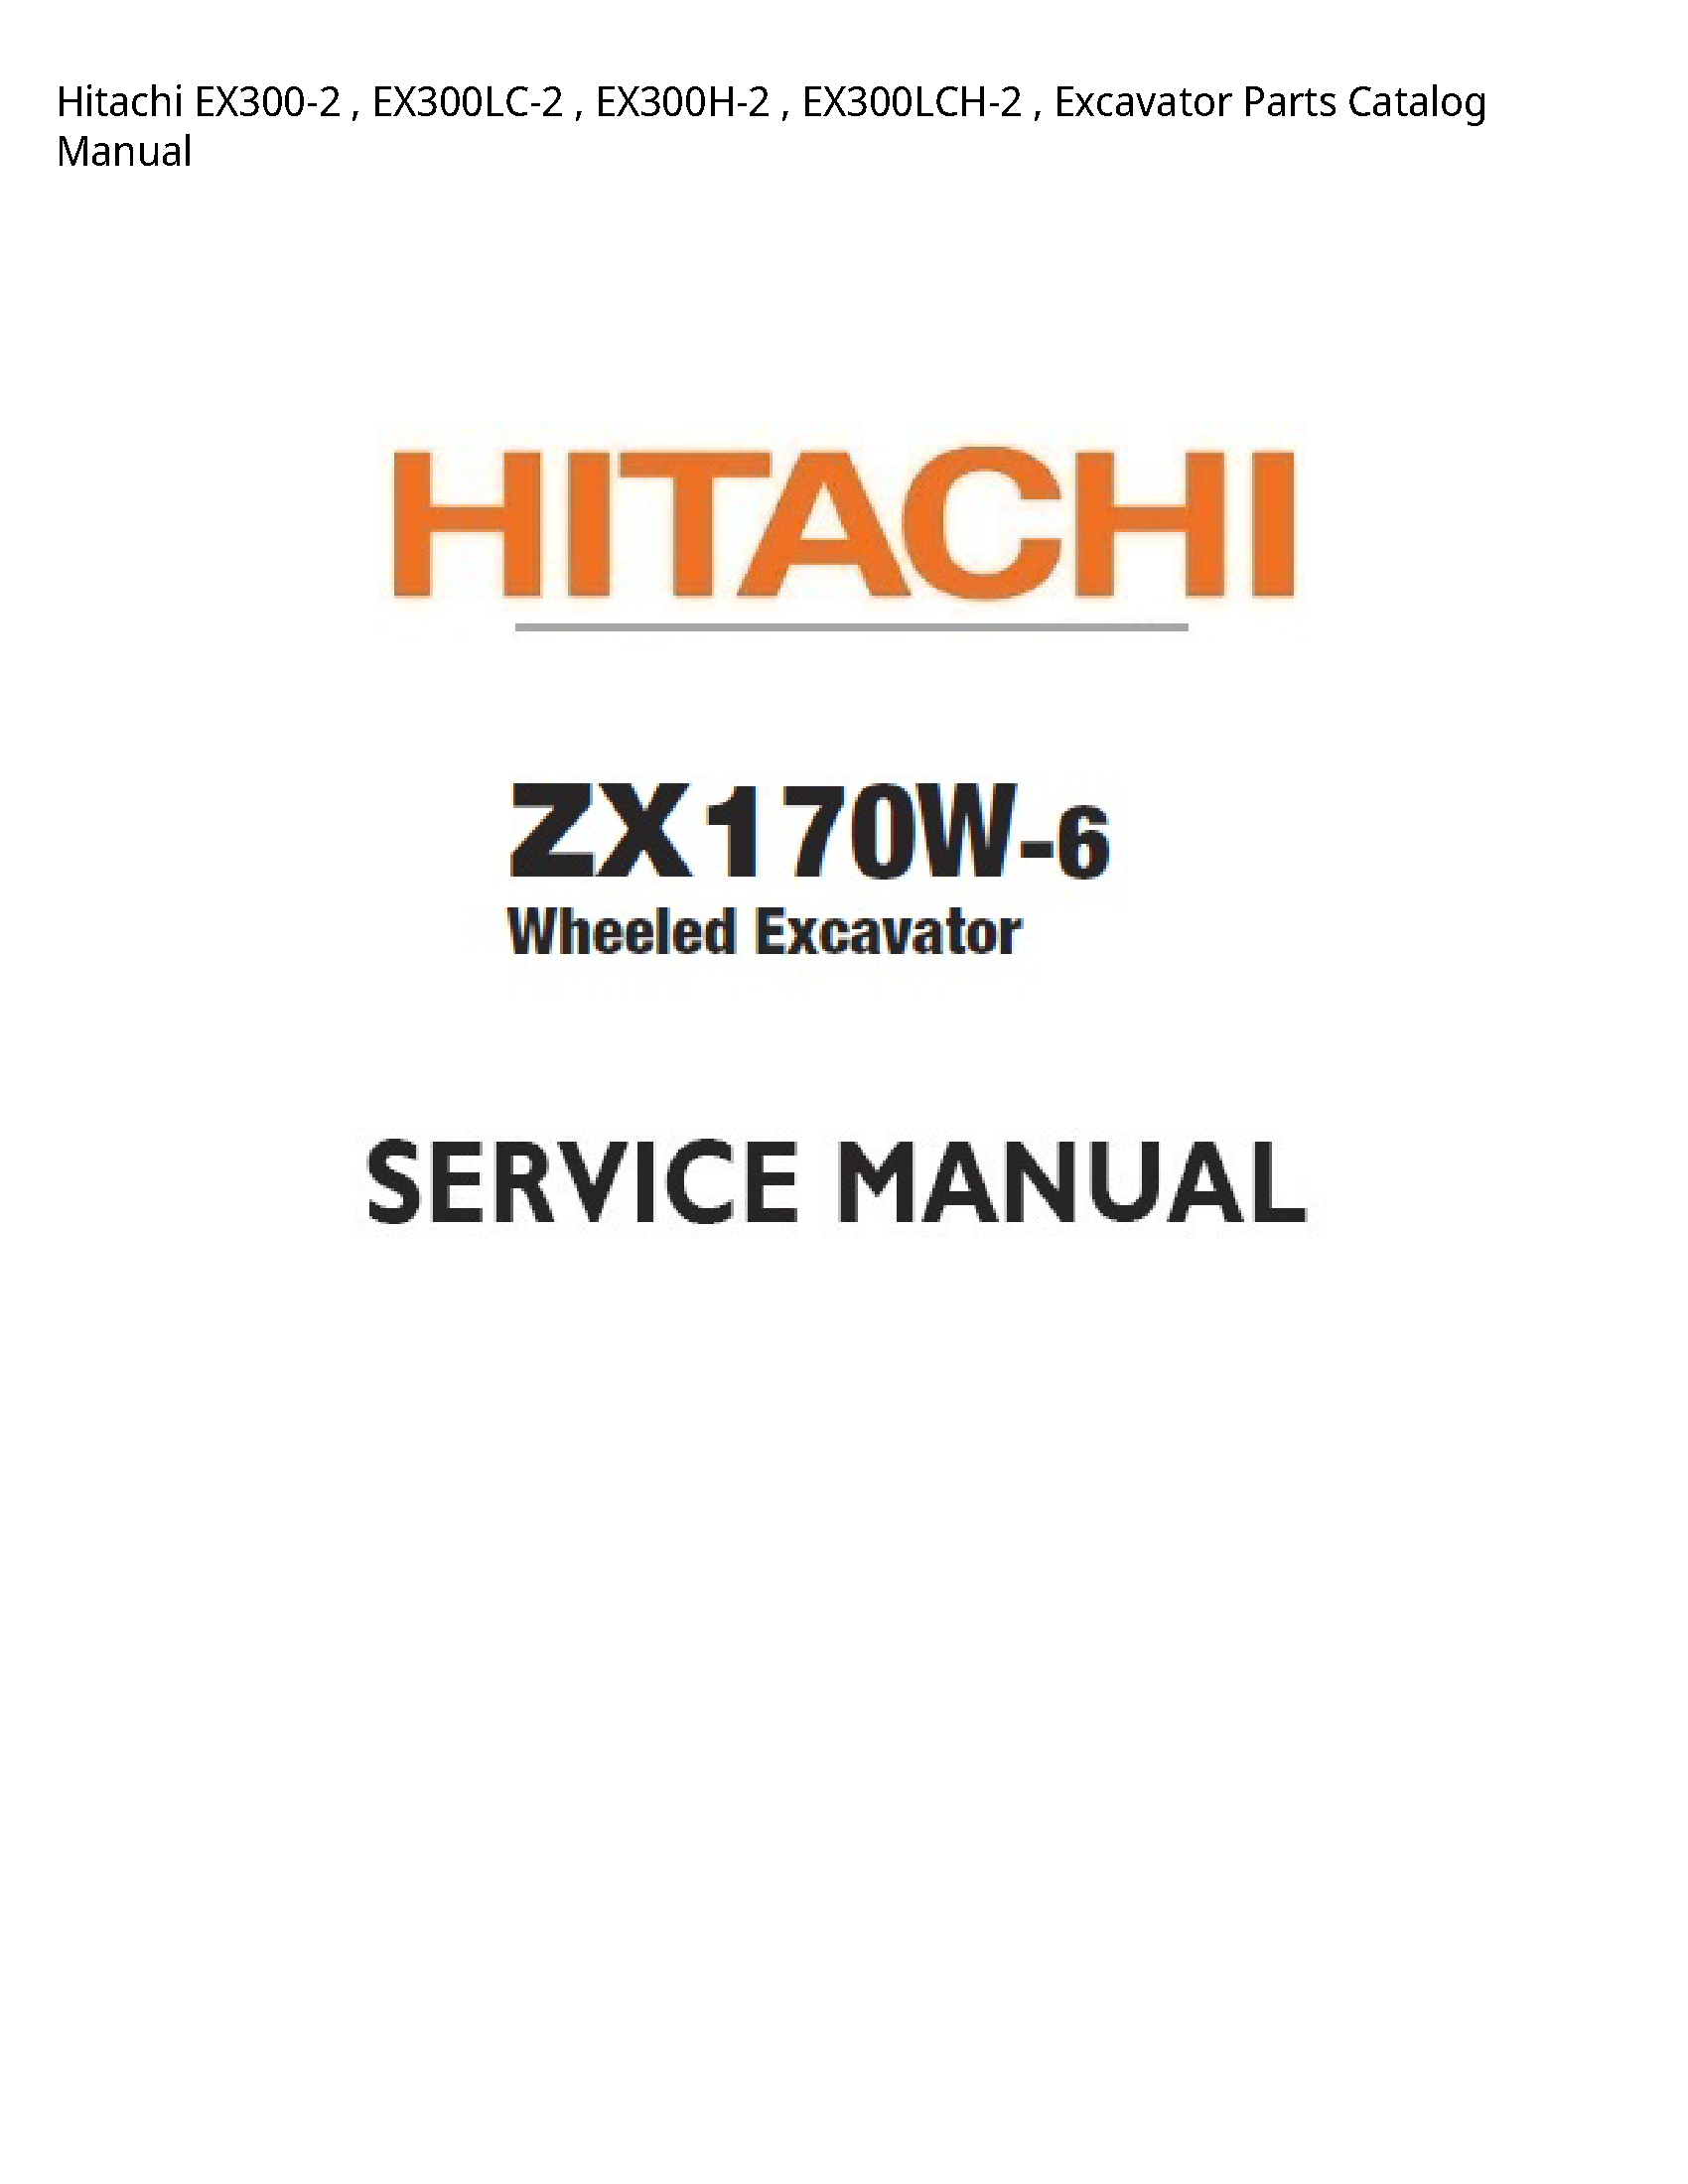 Hitachi EX300-2 Excavator Parts Catalog manual